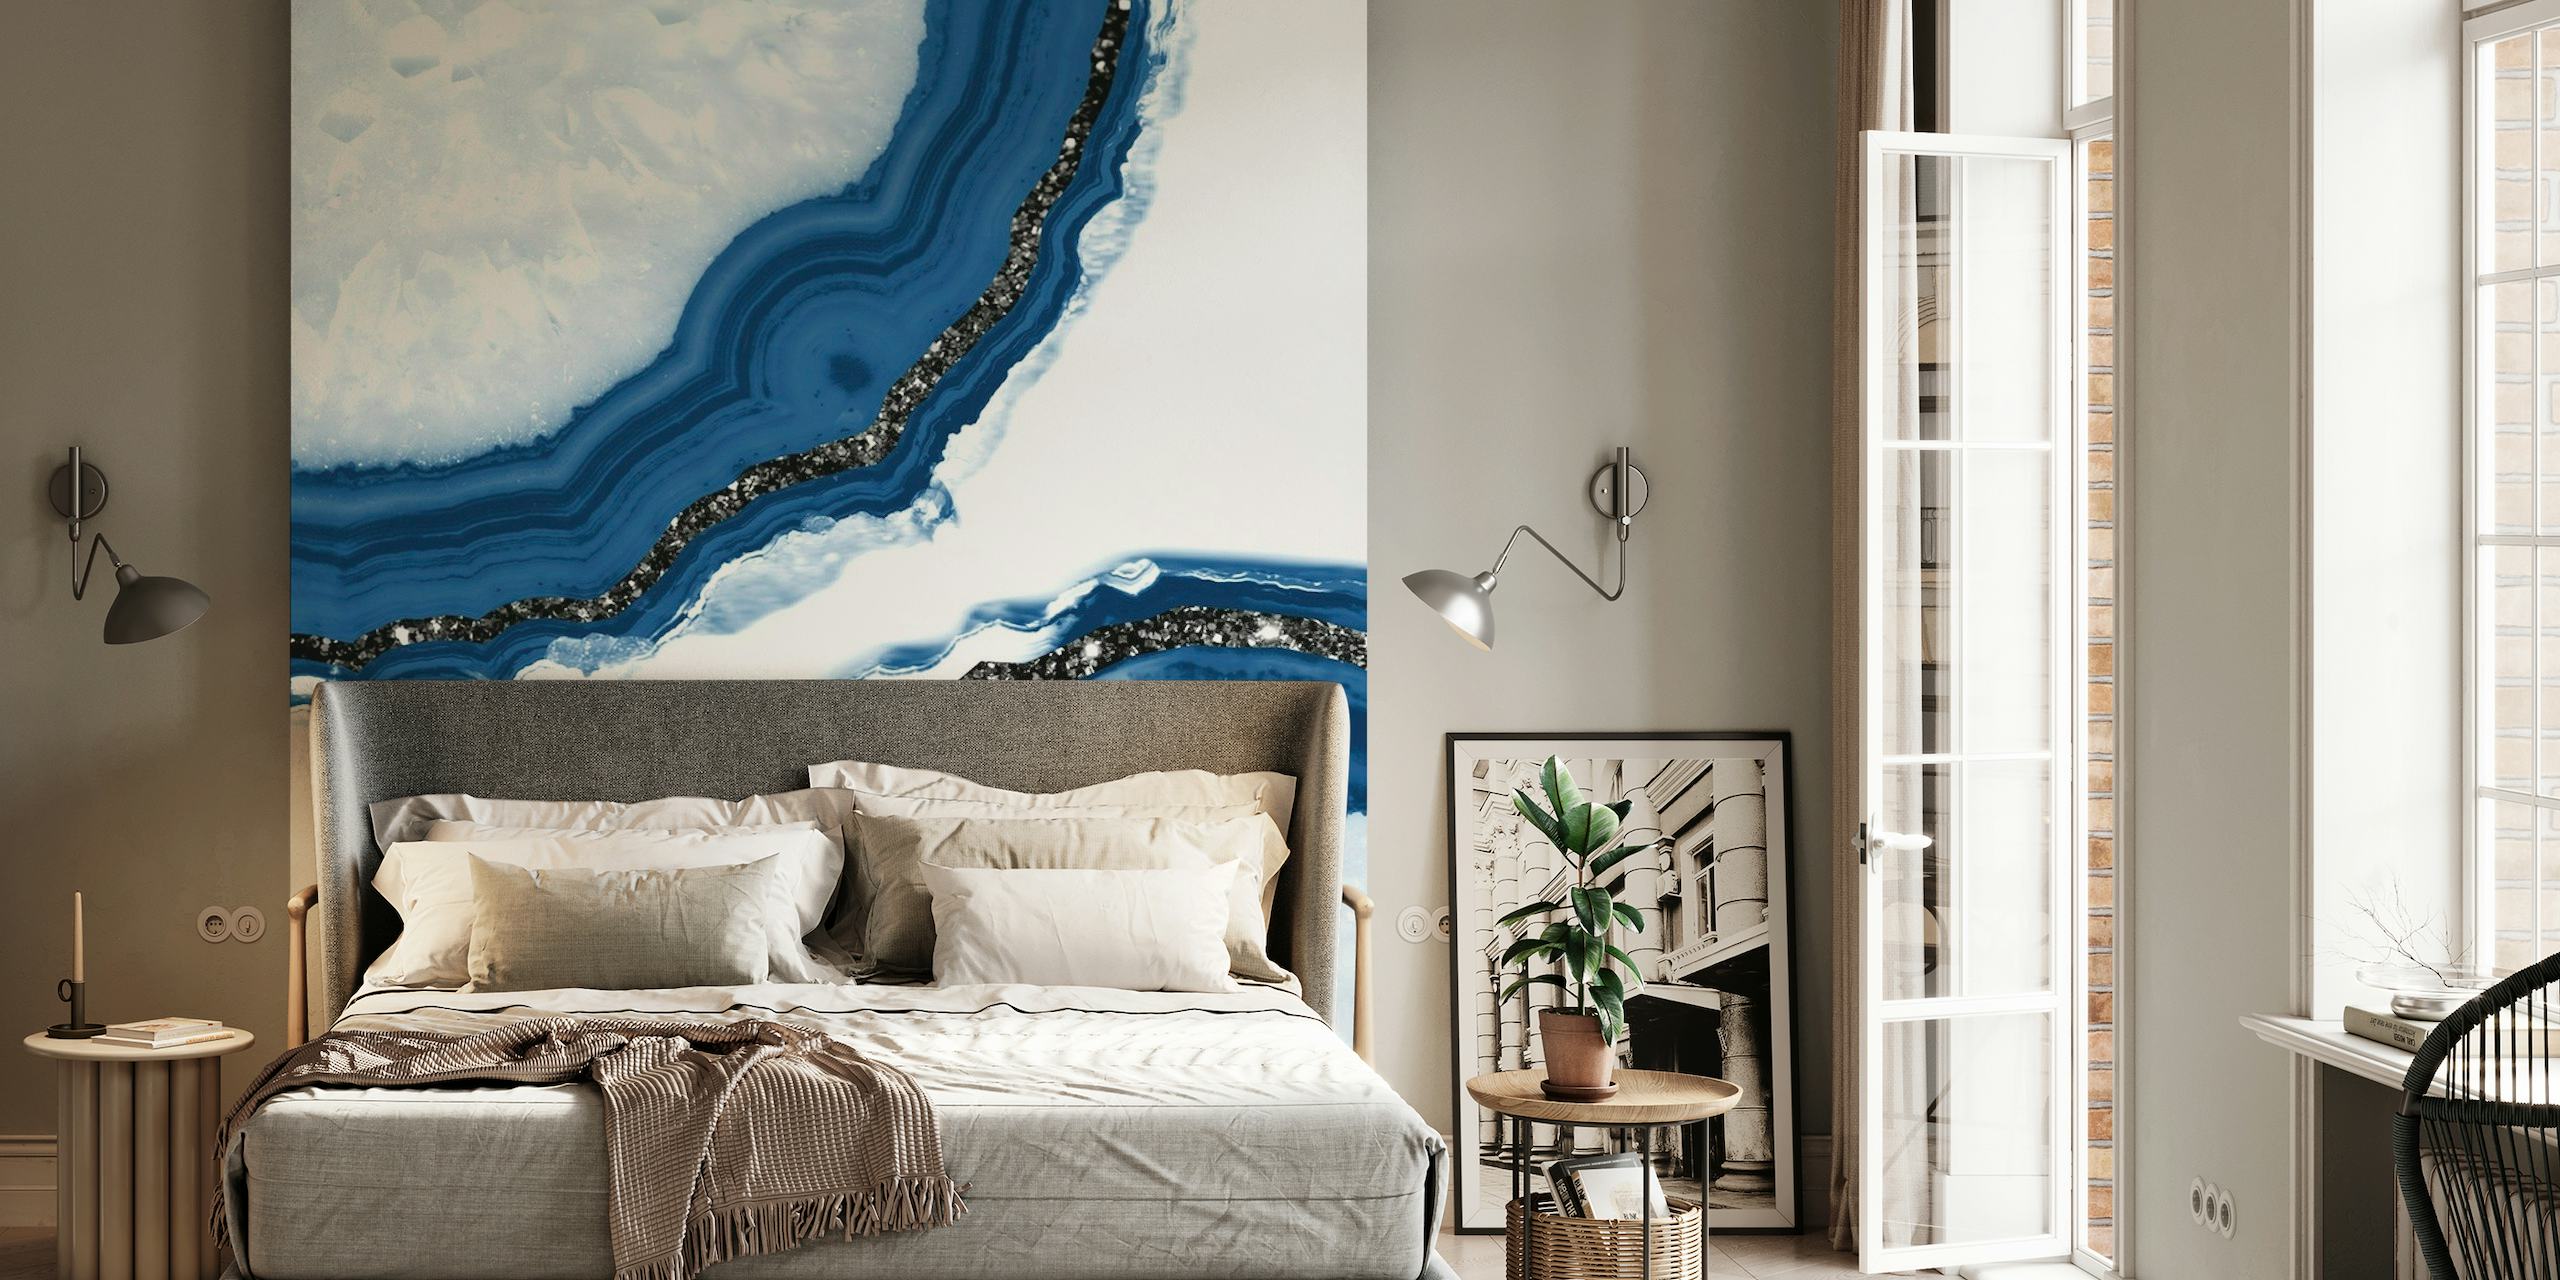 Elegante mural de parede inspirado em ágata com padrões azuis e brancos e detalhes brilhantes